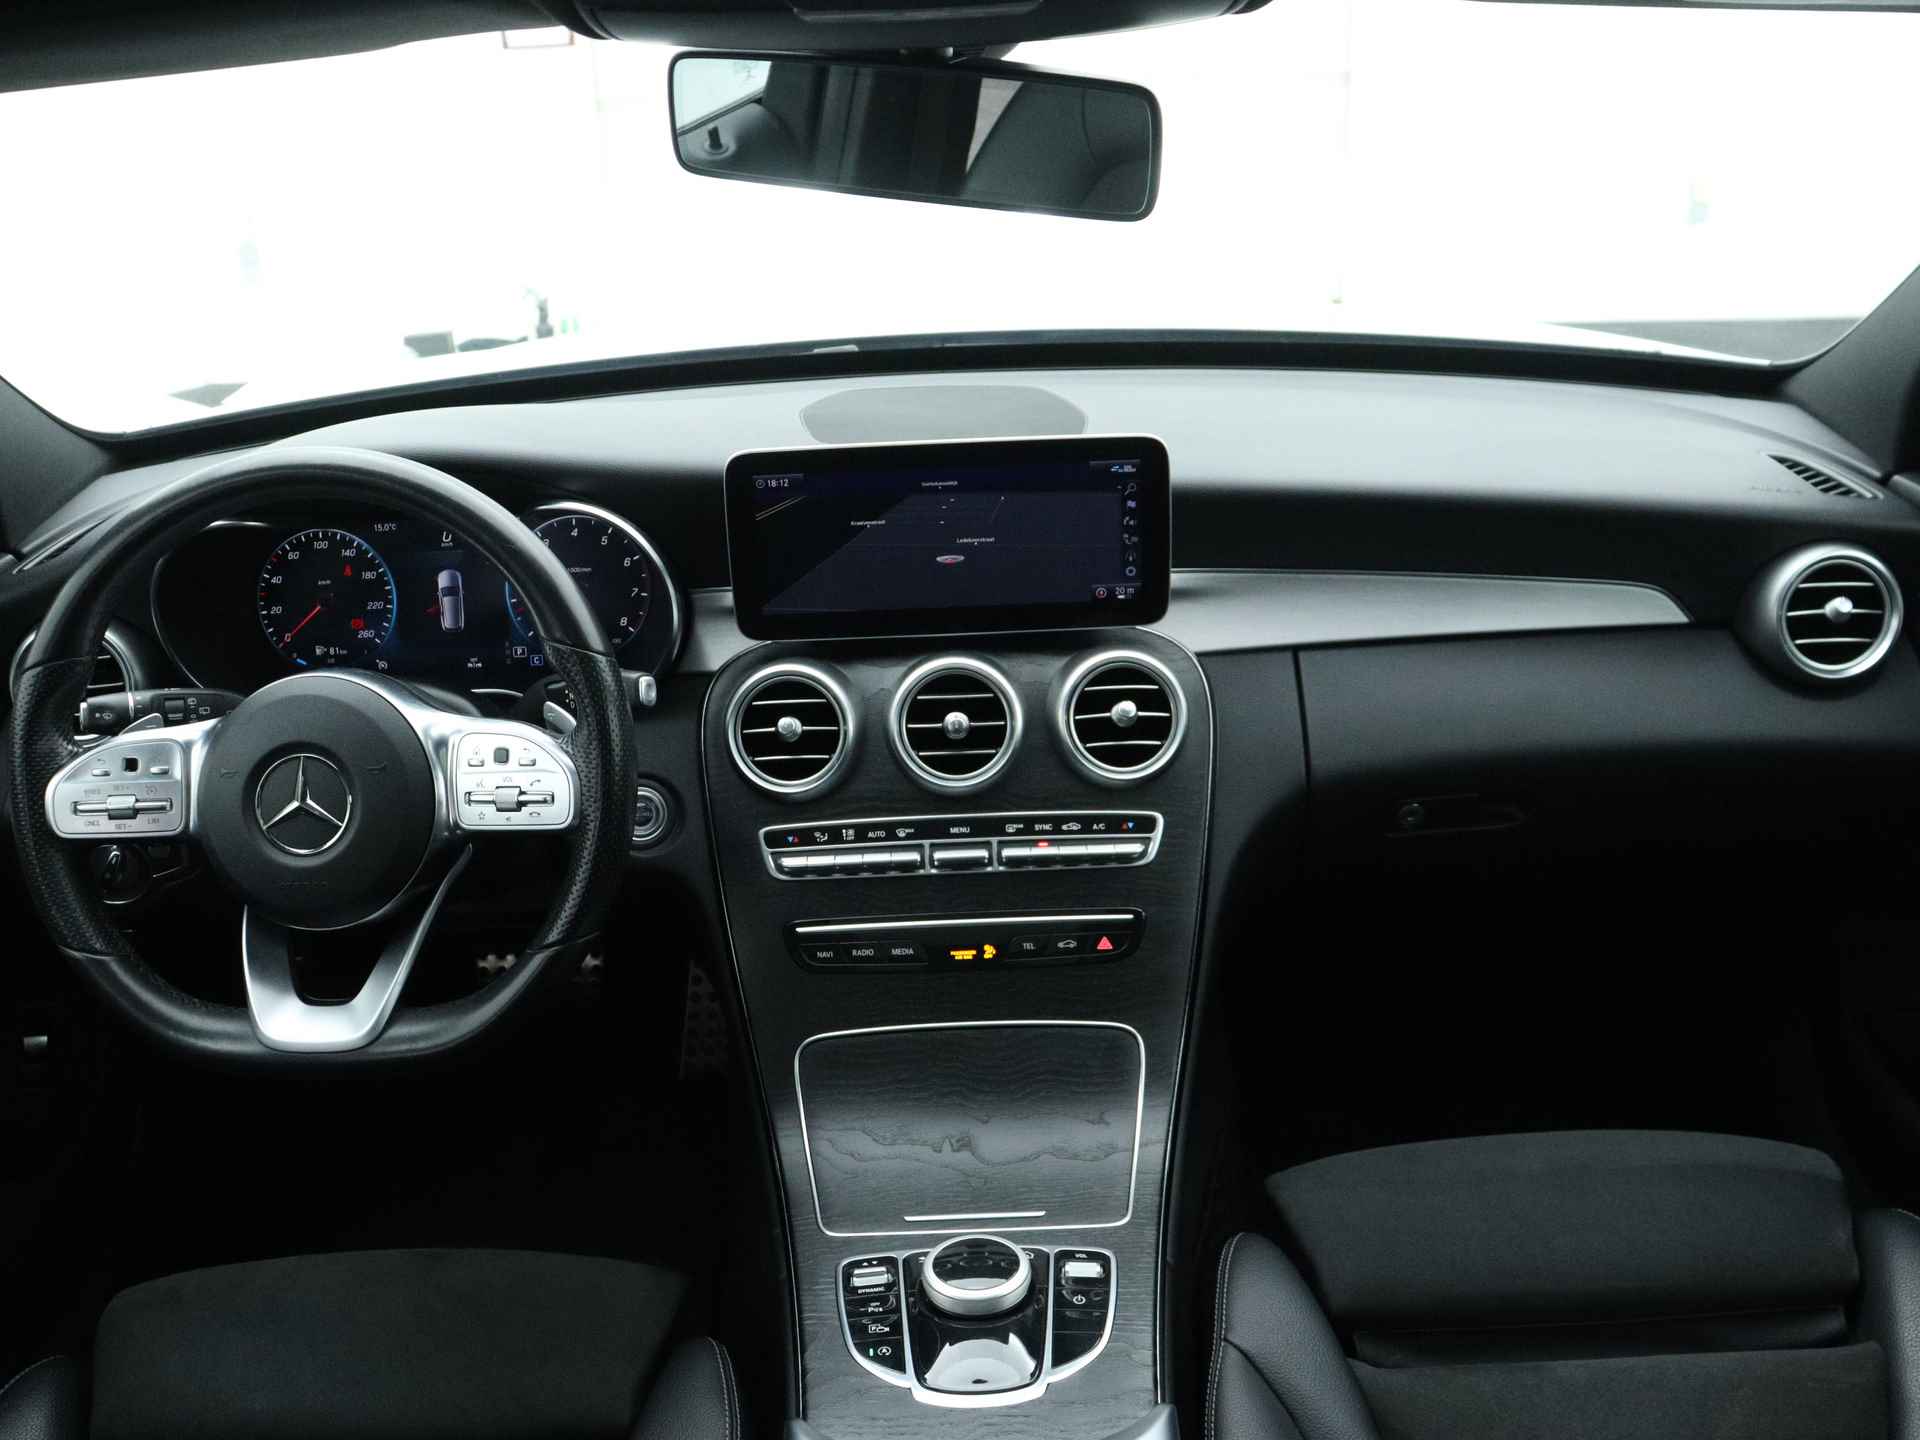 Mercedes-Benz C-Klasse 180 Business Solution AMG | 5 spaaks lichtmetalen velgen | Navigatie | Panoramadak | AMG Styling | Achteruitrijcamera | LED Koplampen | Inclusief 24 maanden MB Certified garantie voor europa. - 6/50